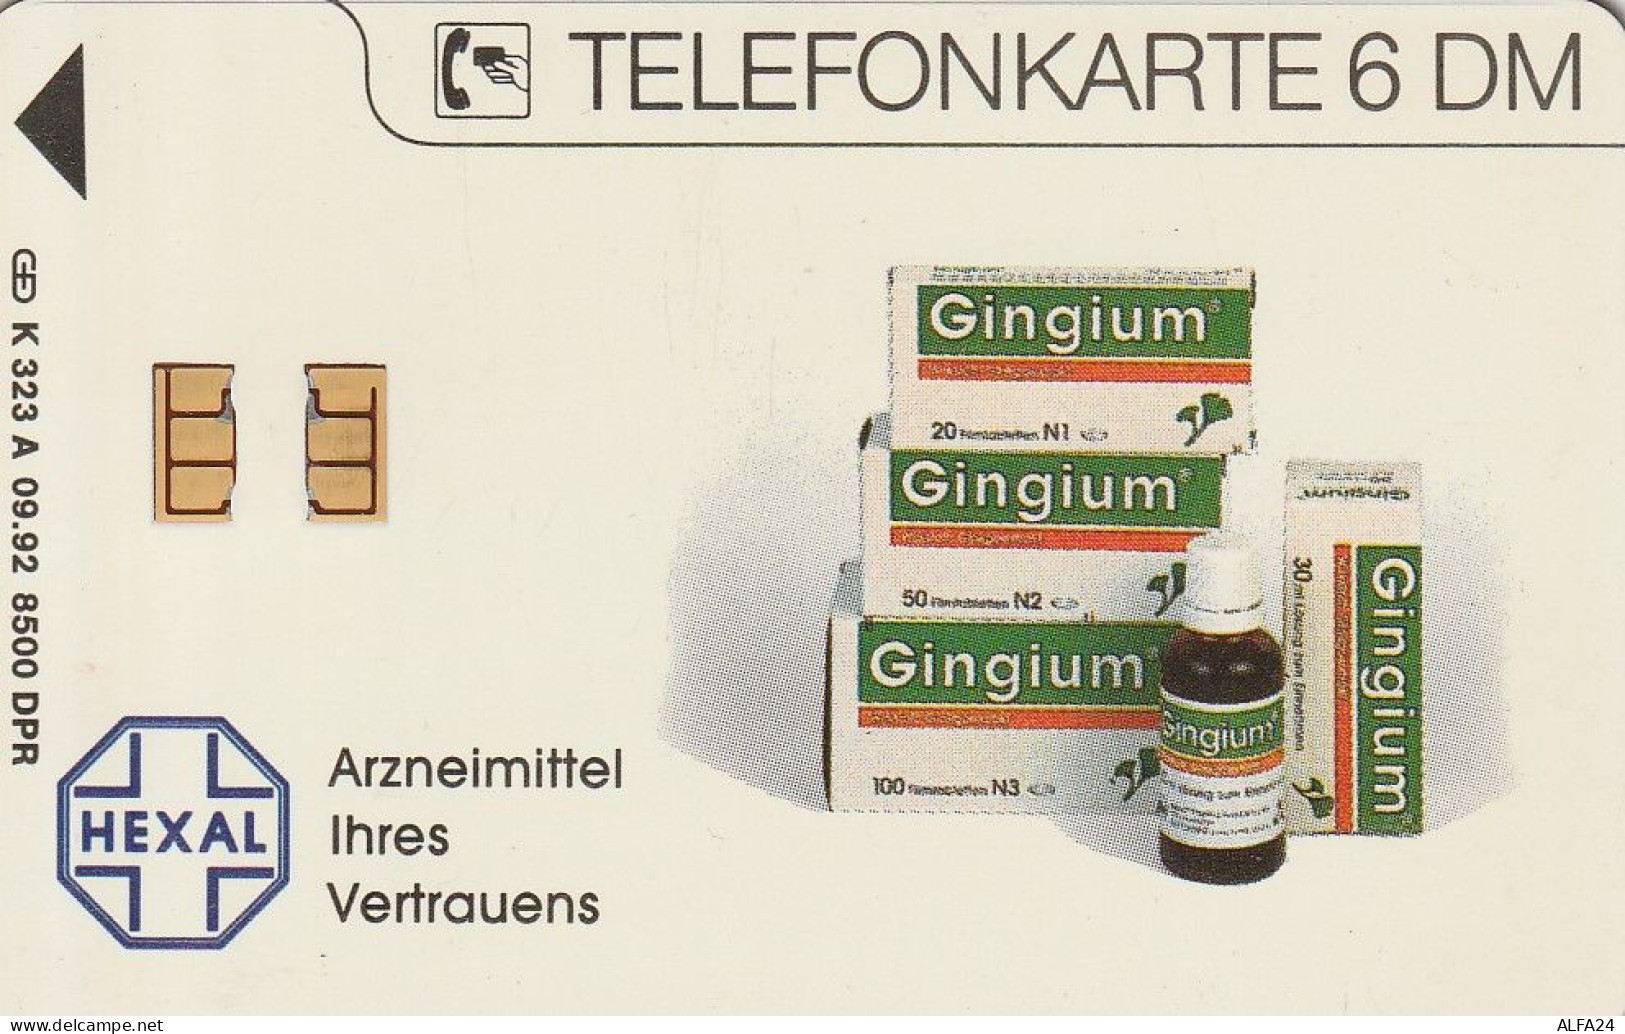 PHONE CARD GERMANIA SERIE A TIR.8500 (E79.41.8 - A + AD-Series : D. Telekom AG Advertisement